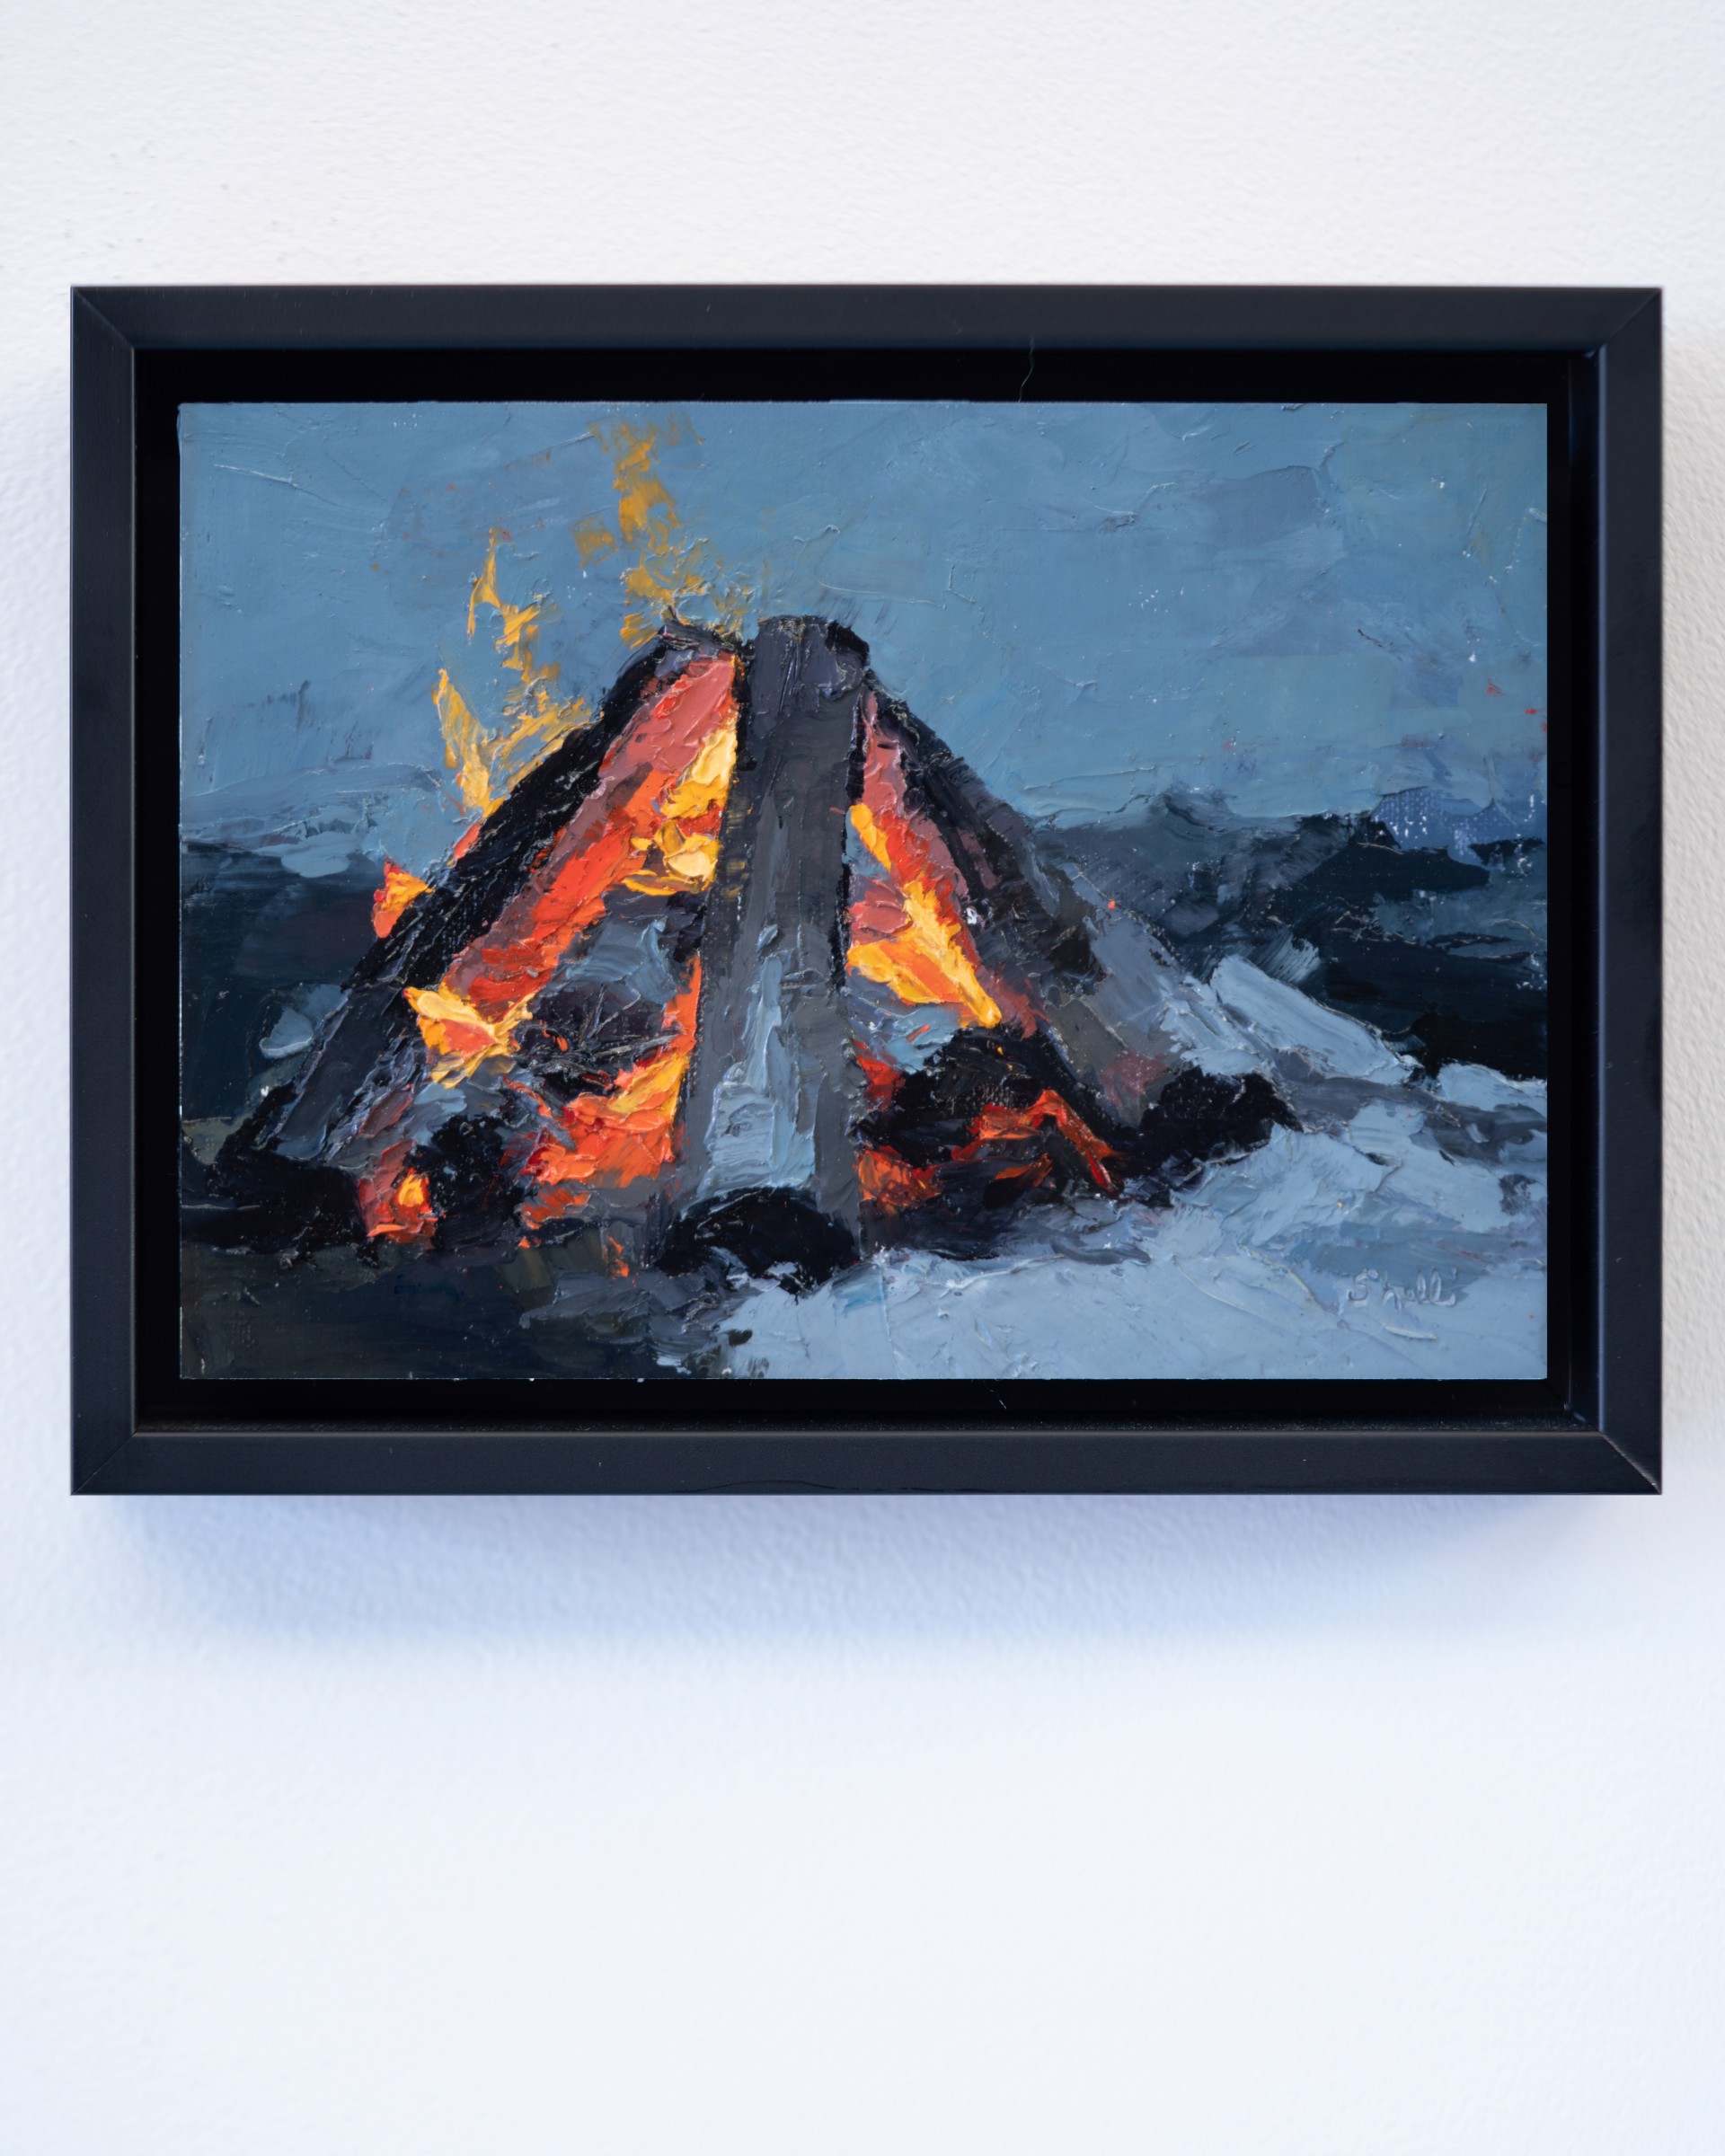 Fire in Winter by Shelli Langdale